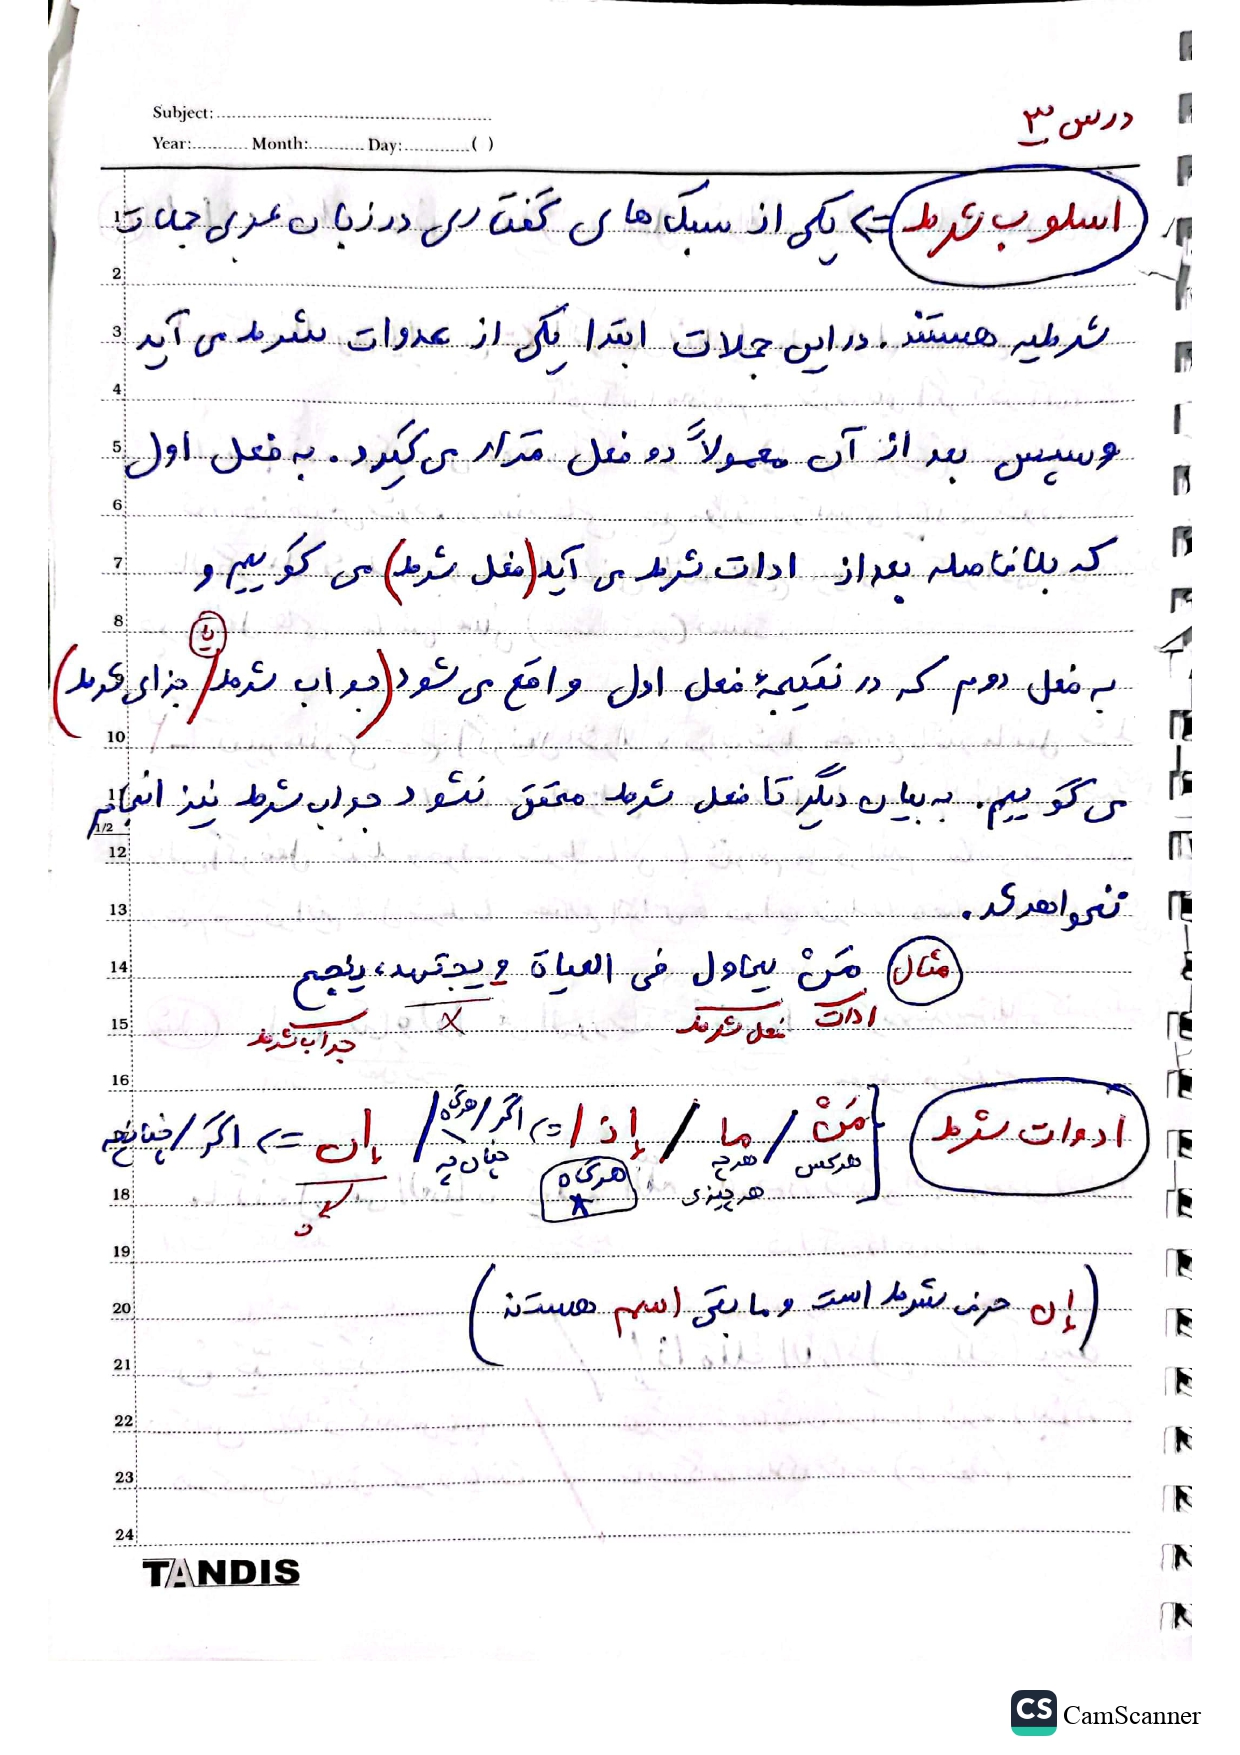 جزوه عربی یازدهم - درس ۳ اسلوب شرط 1